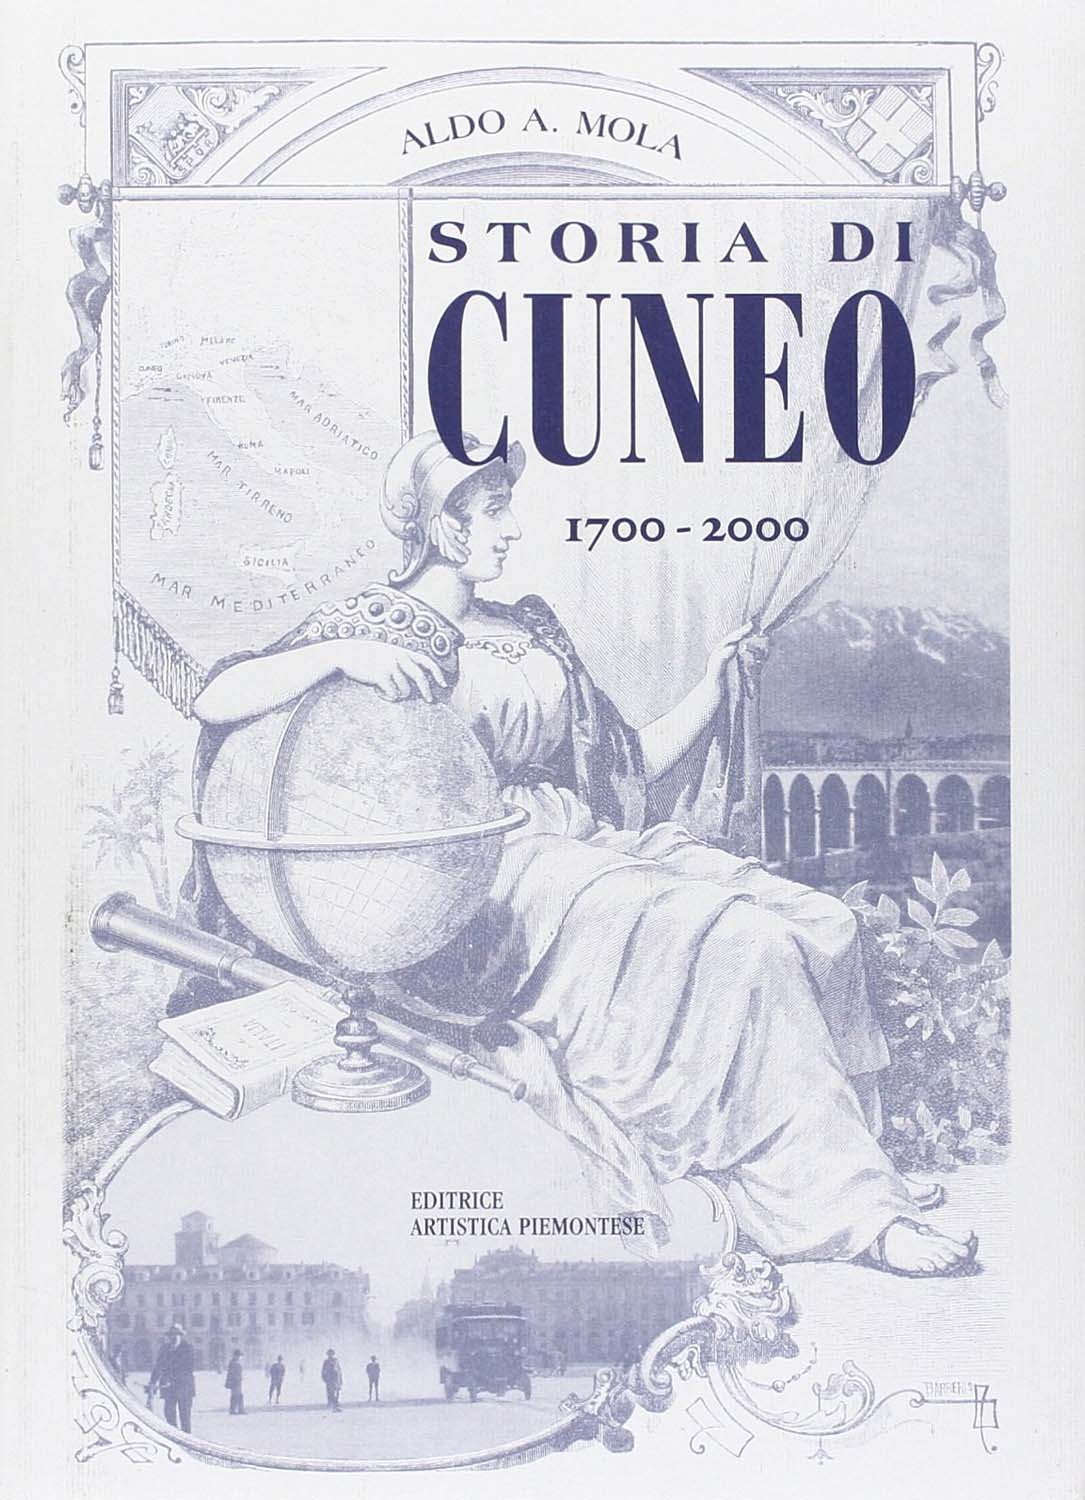 Libri Mola Aldo A. - Storia Di Cuneo Dal 1700 Al 2000 NUOVO SIGILLATO, EDIZIONE DEL 01/01/2001 SUBITO DISPONIBILE